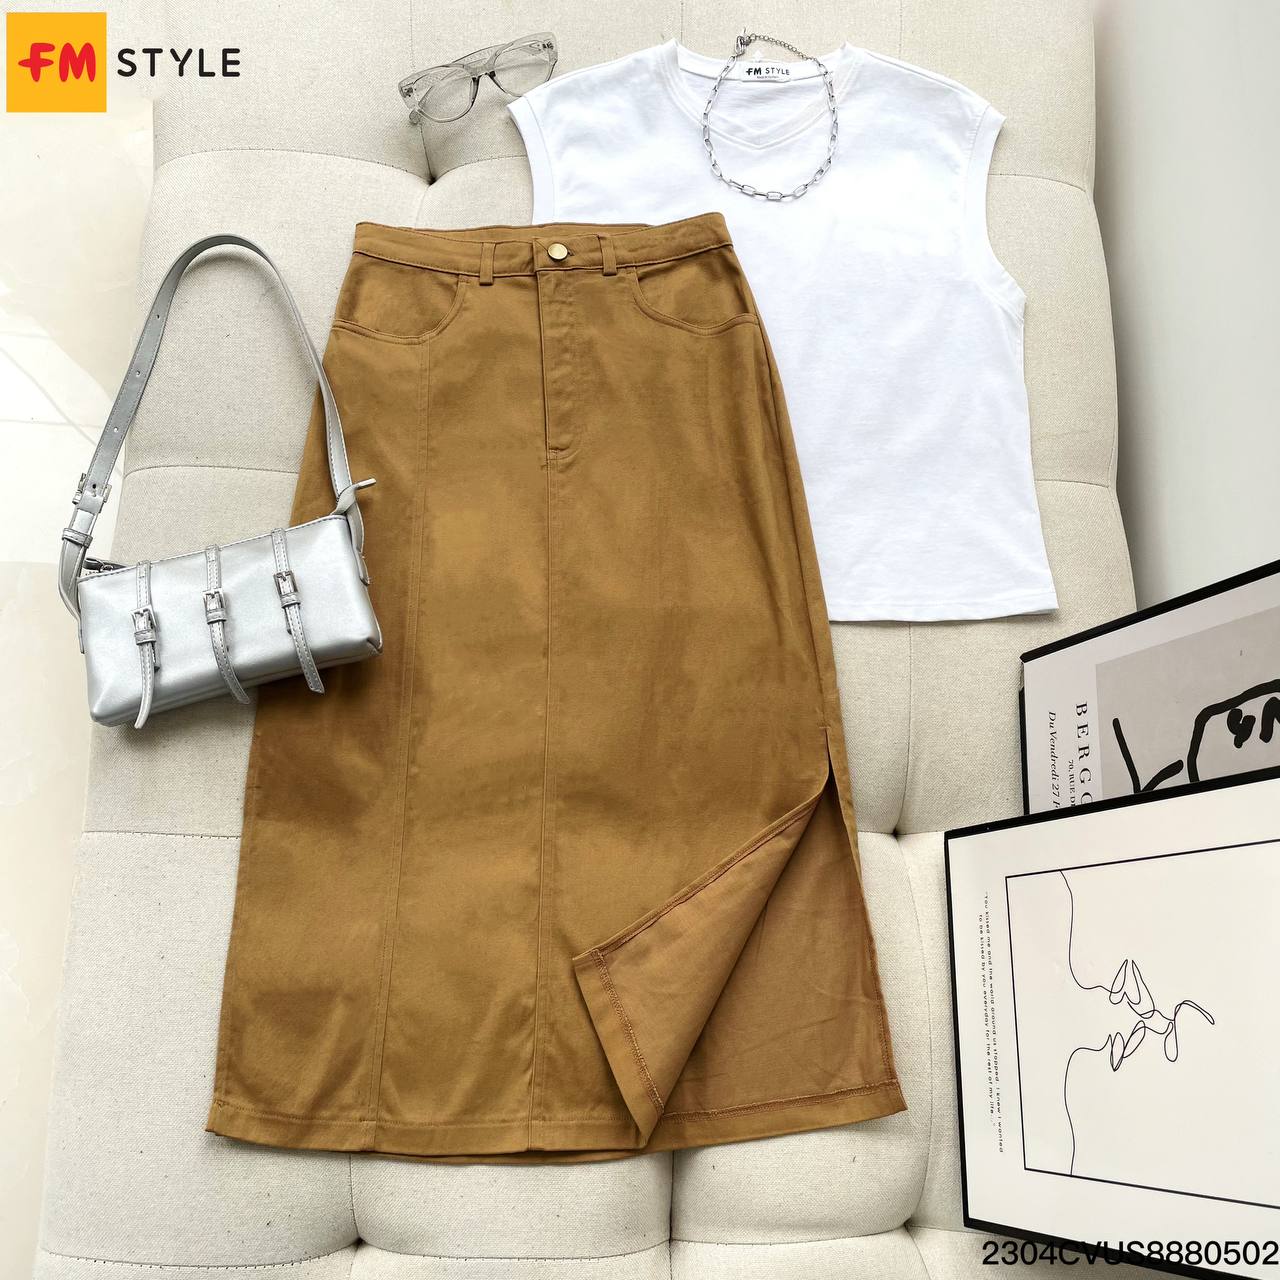 CV2183 - Chân váy kaki kèm đai túi vuông - Thời trang công sở nữ - Bazzi.vn